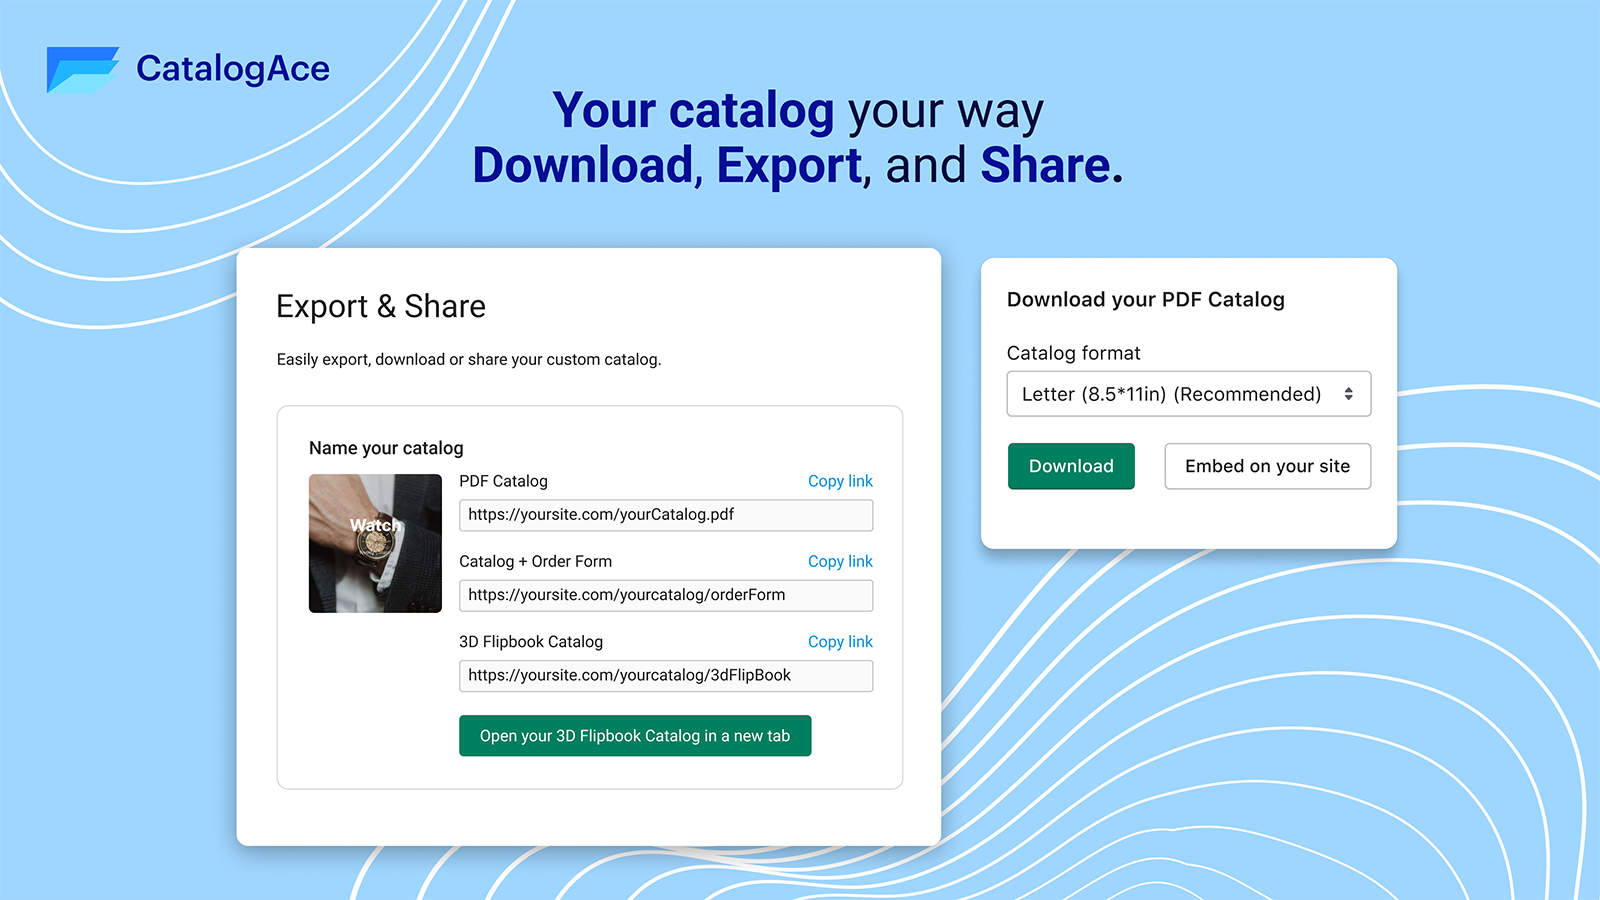 Comparte, descarga y exporta catálogos para proveedores o clientes